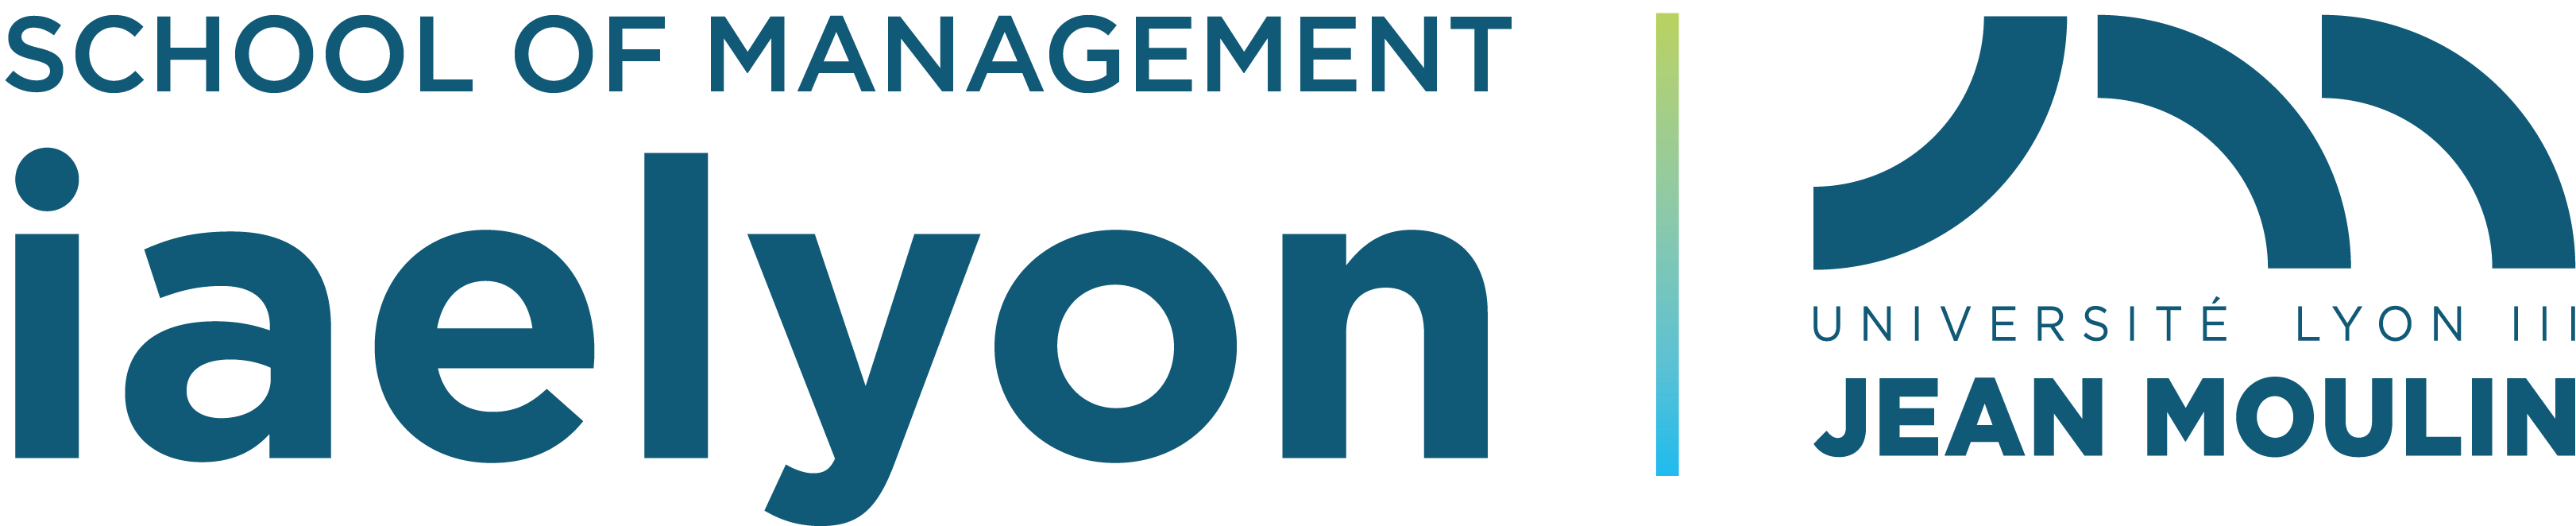 logo iaelyon